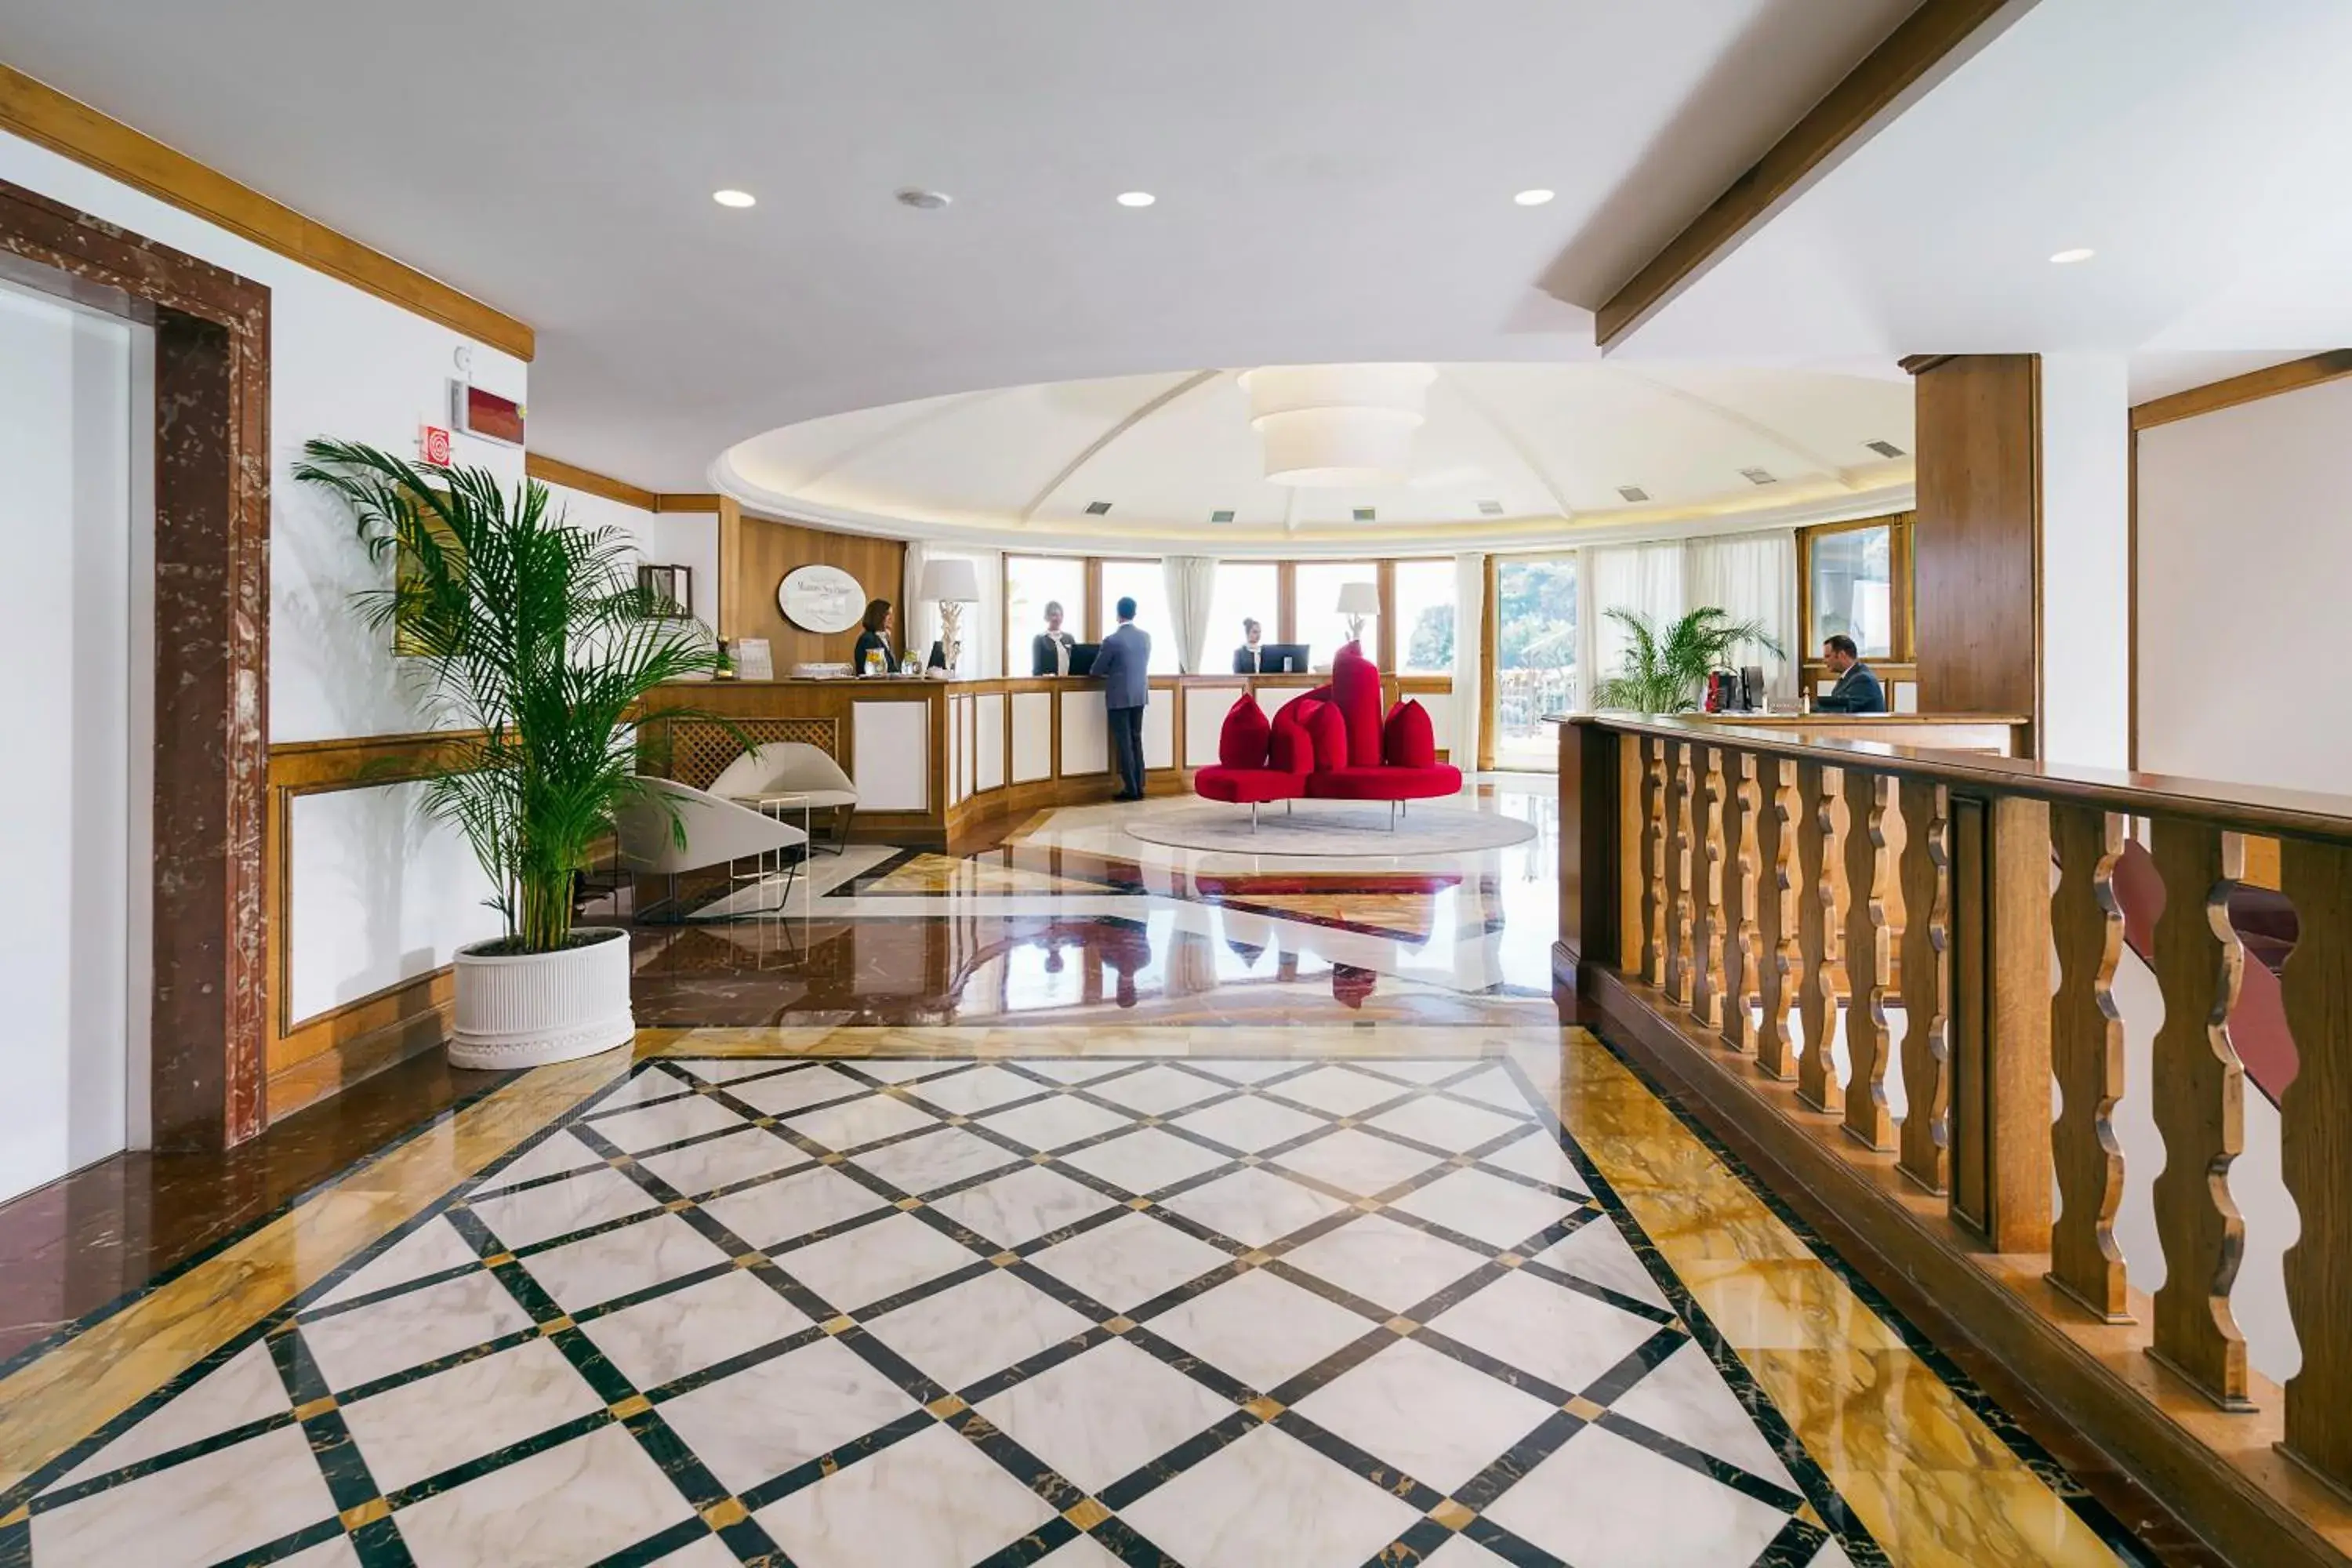 Lobby or reception, Lobby/Reception in Grand Hotel Mazzaro Sea Palace